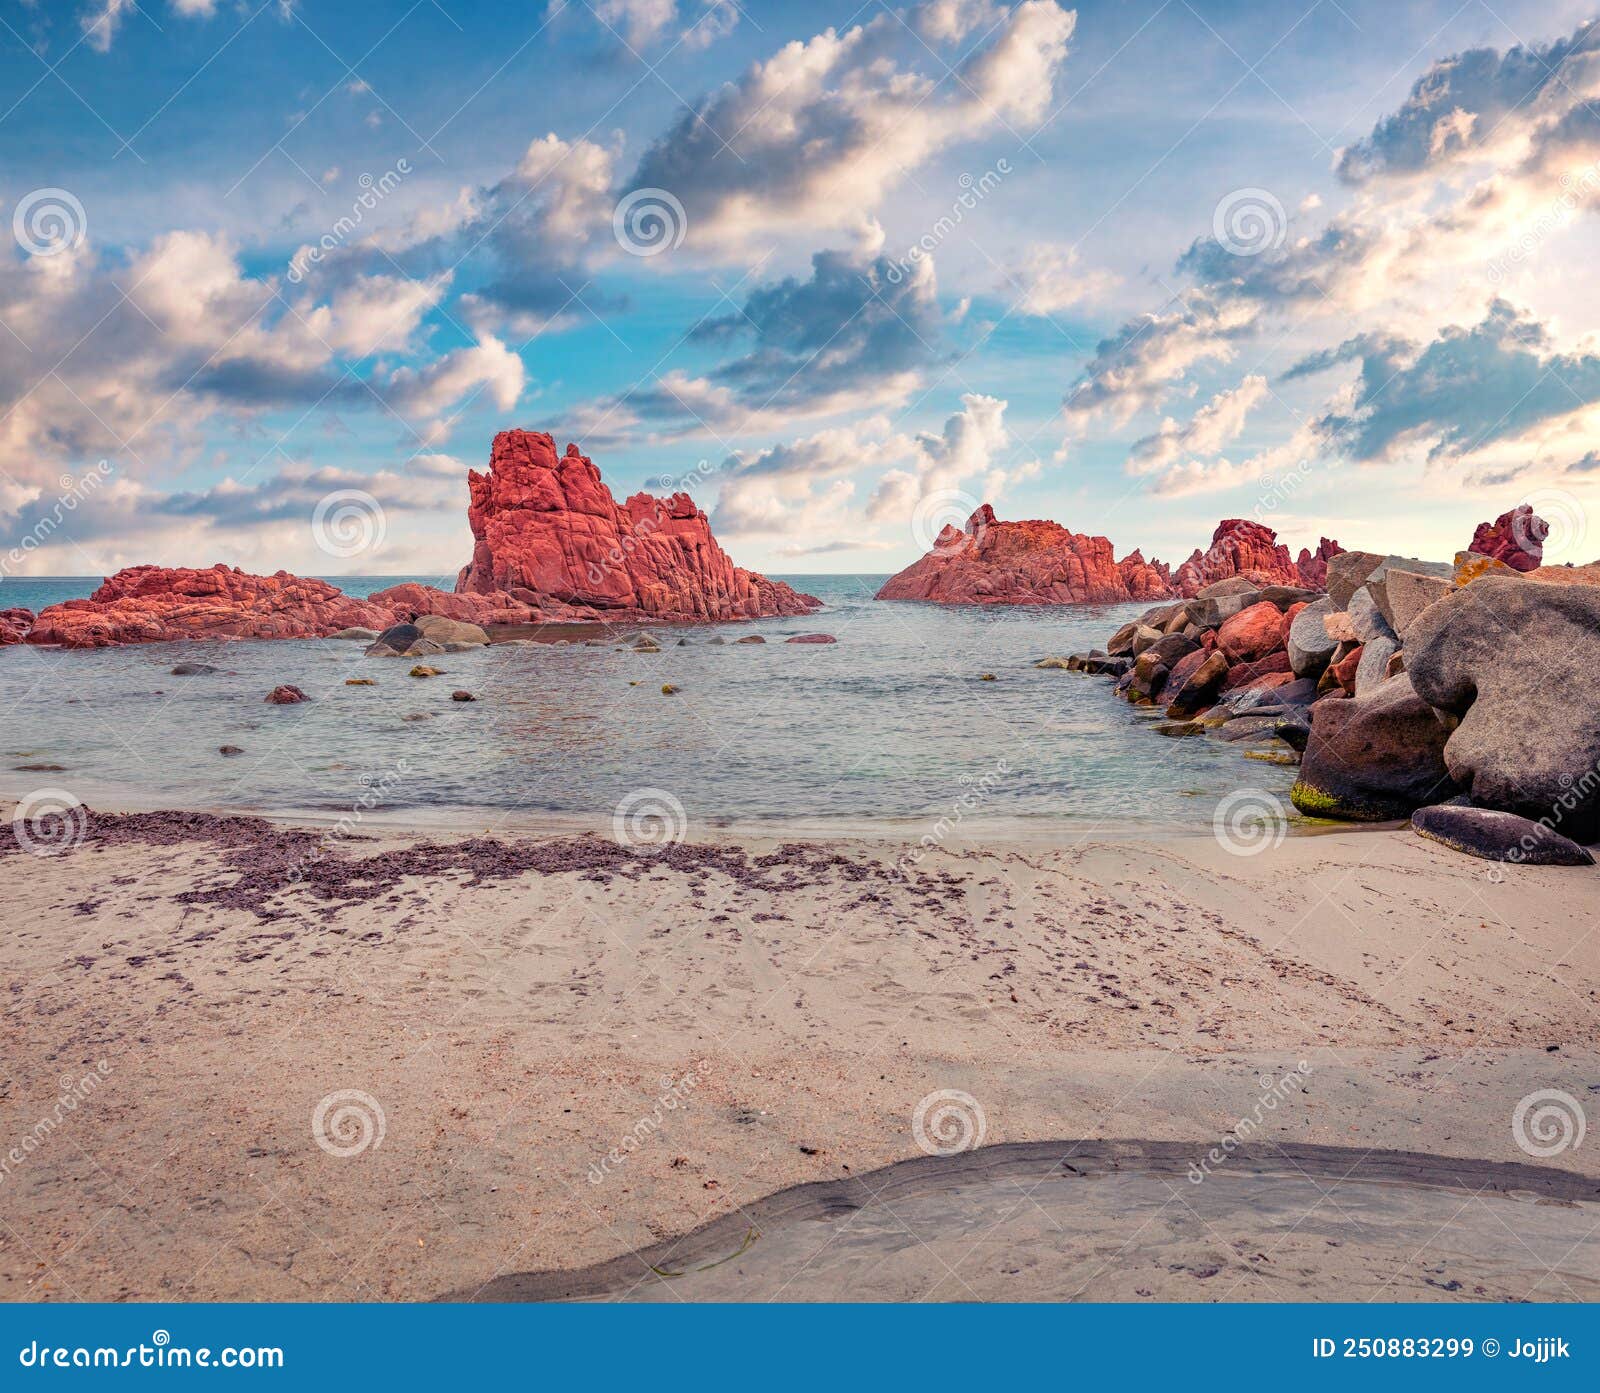 summer scene of cea beach with red rocks gli scogli rossi - faraglioni on background.